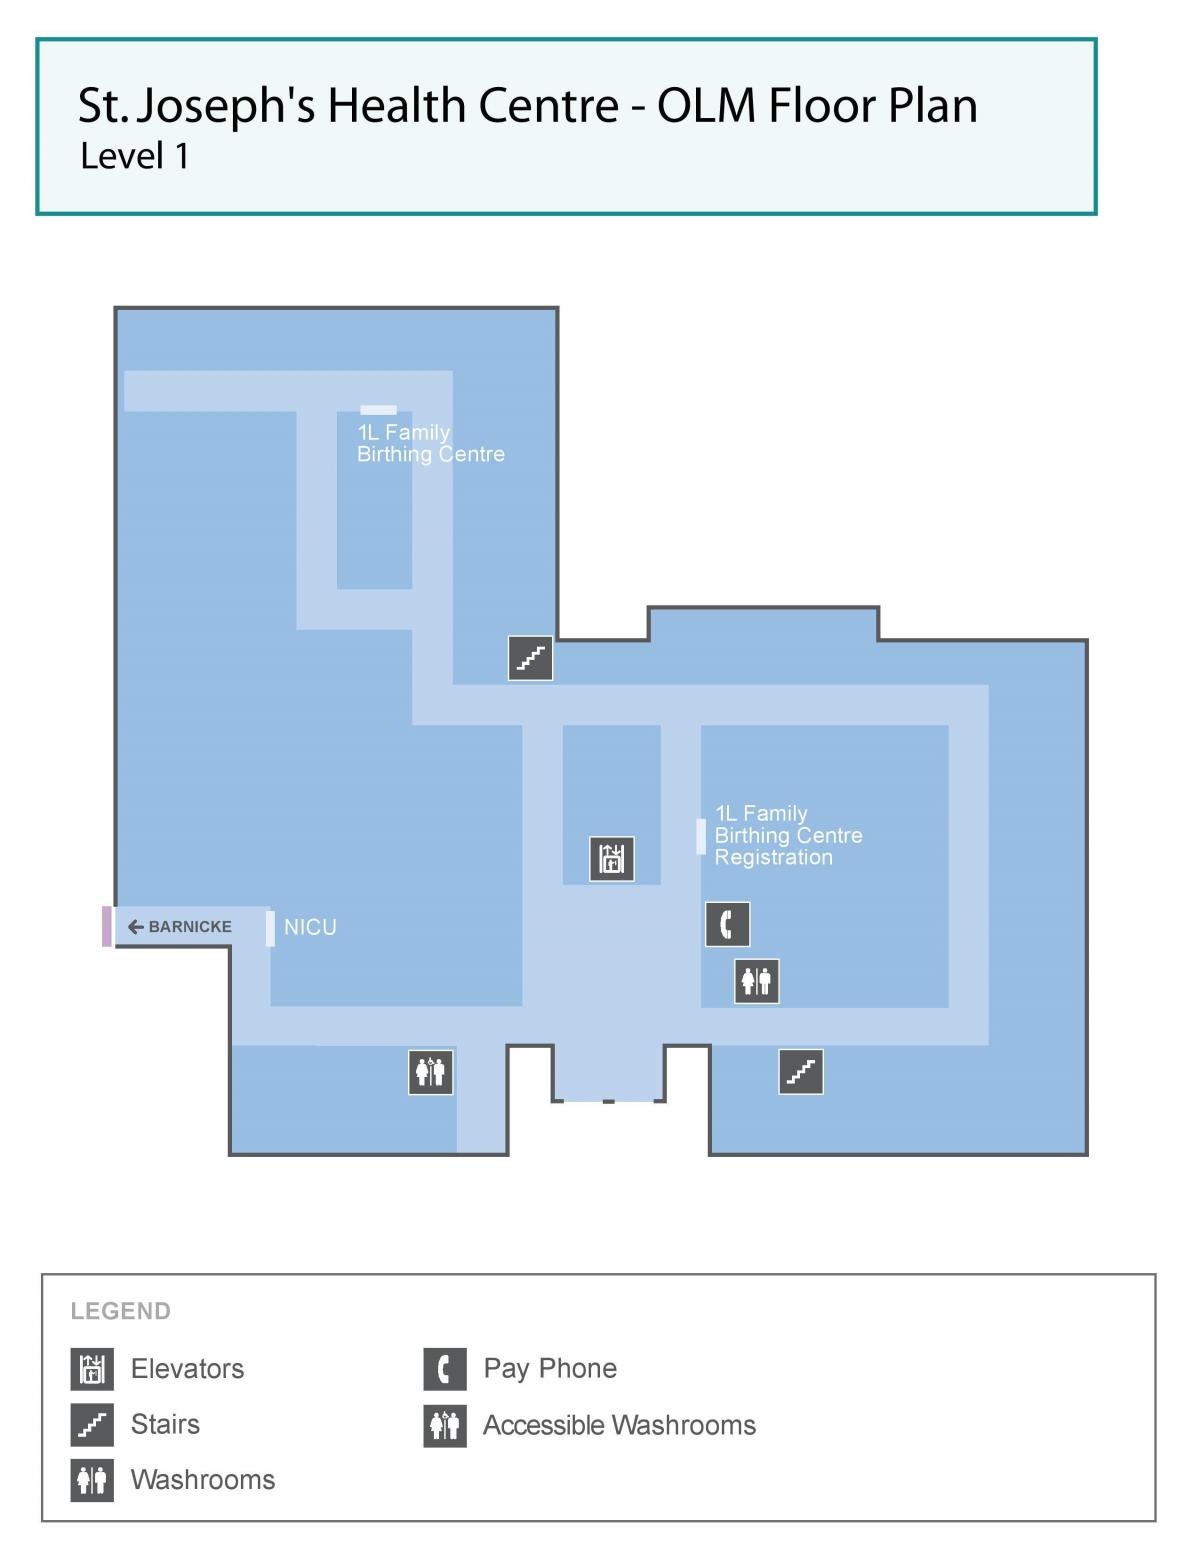 Harta e Shën Jozefit në qendrën Shëndetësore të Torontos, OLM niveli 1